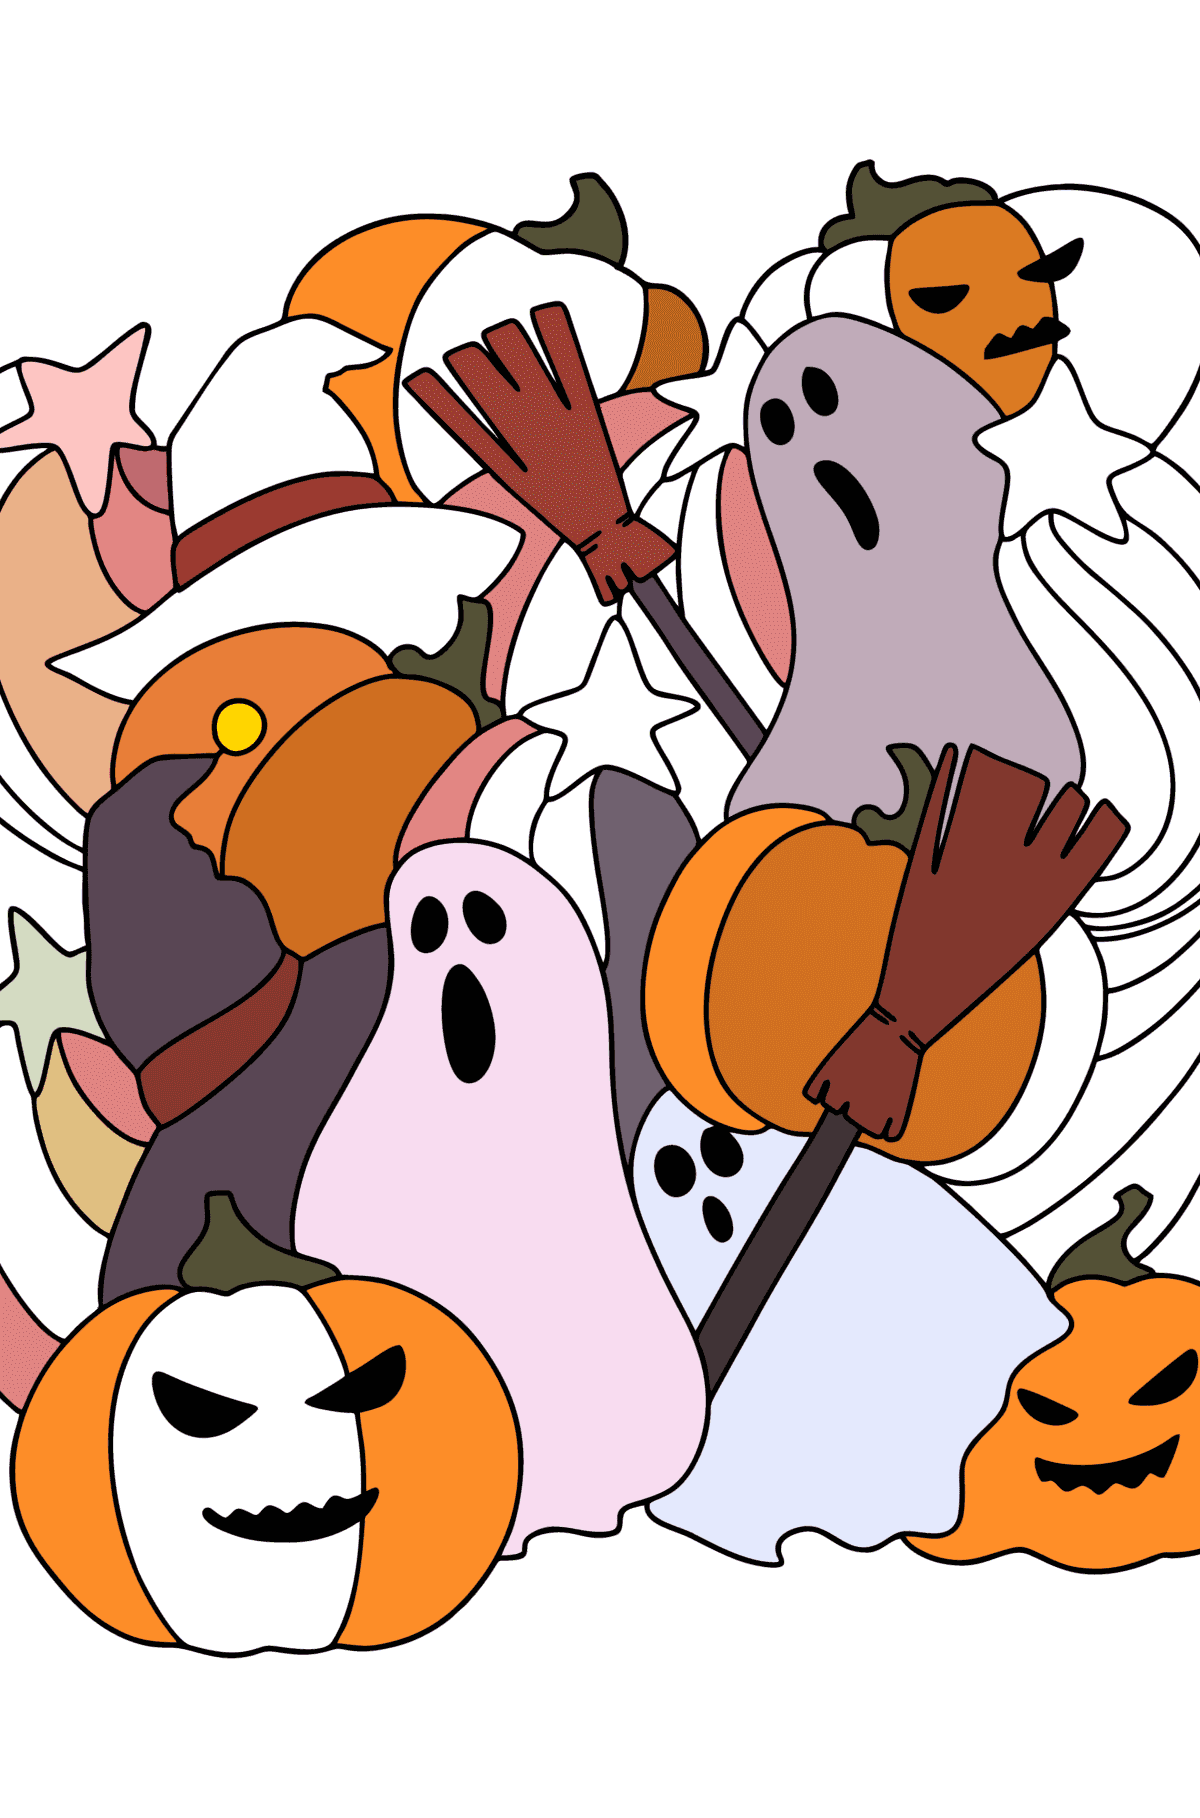 Doodle Malseite für Kinder - Halloween - Malvorlagen für Kinder